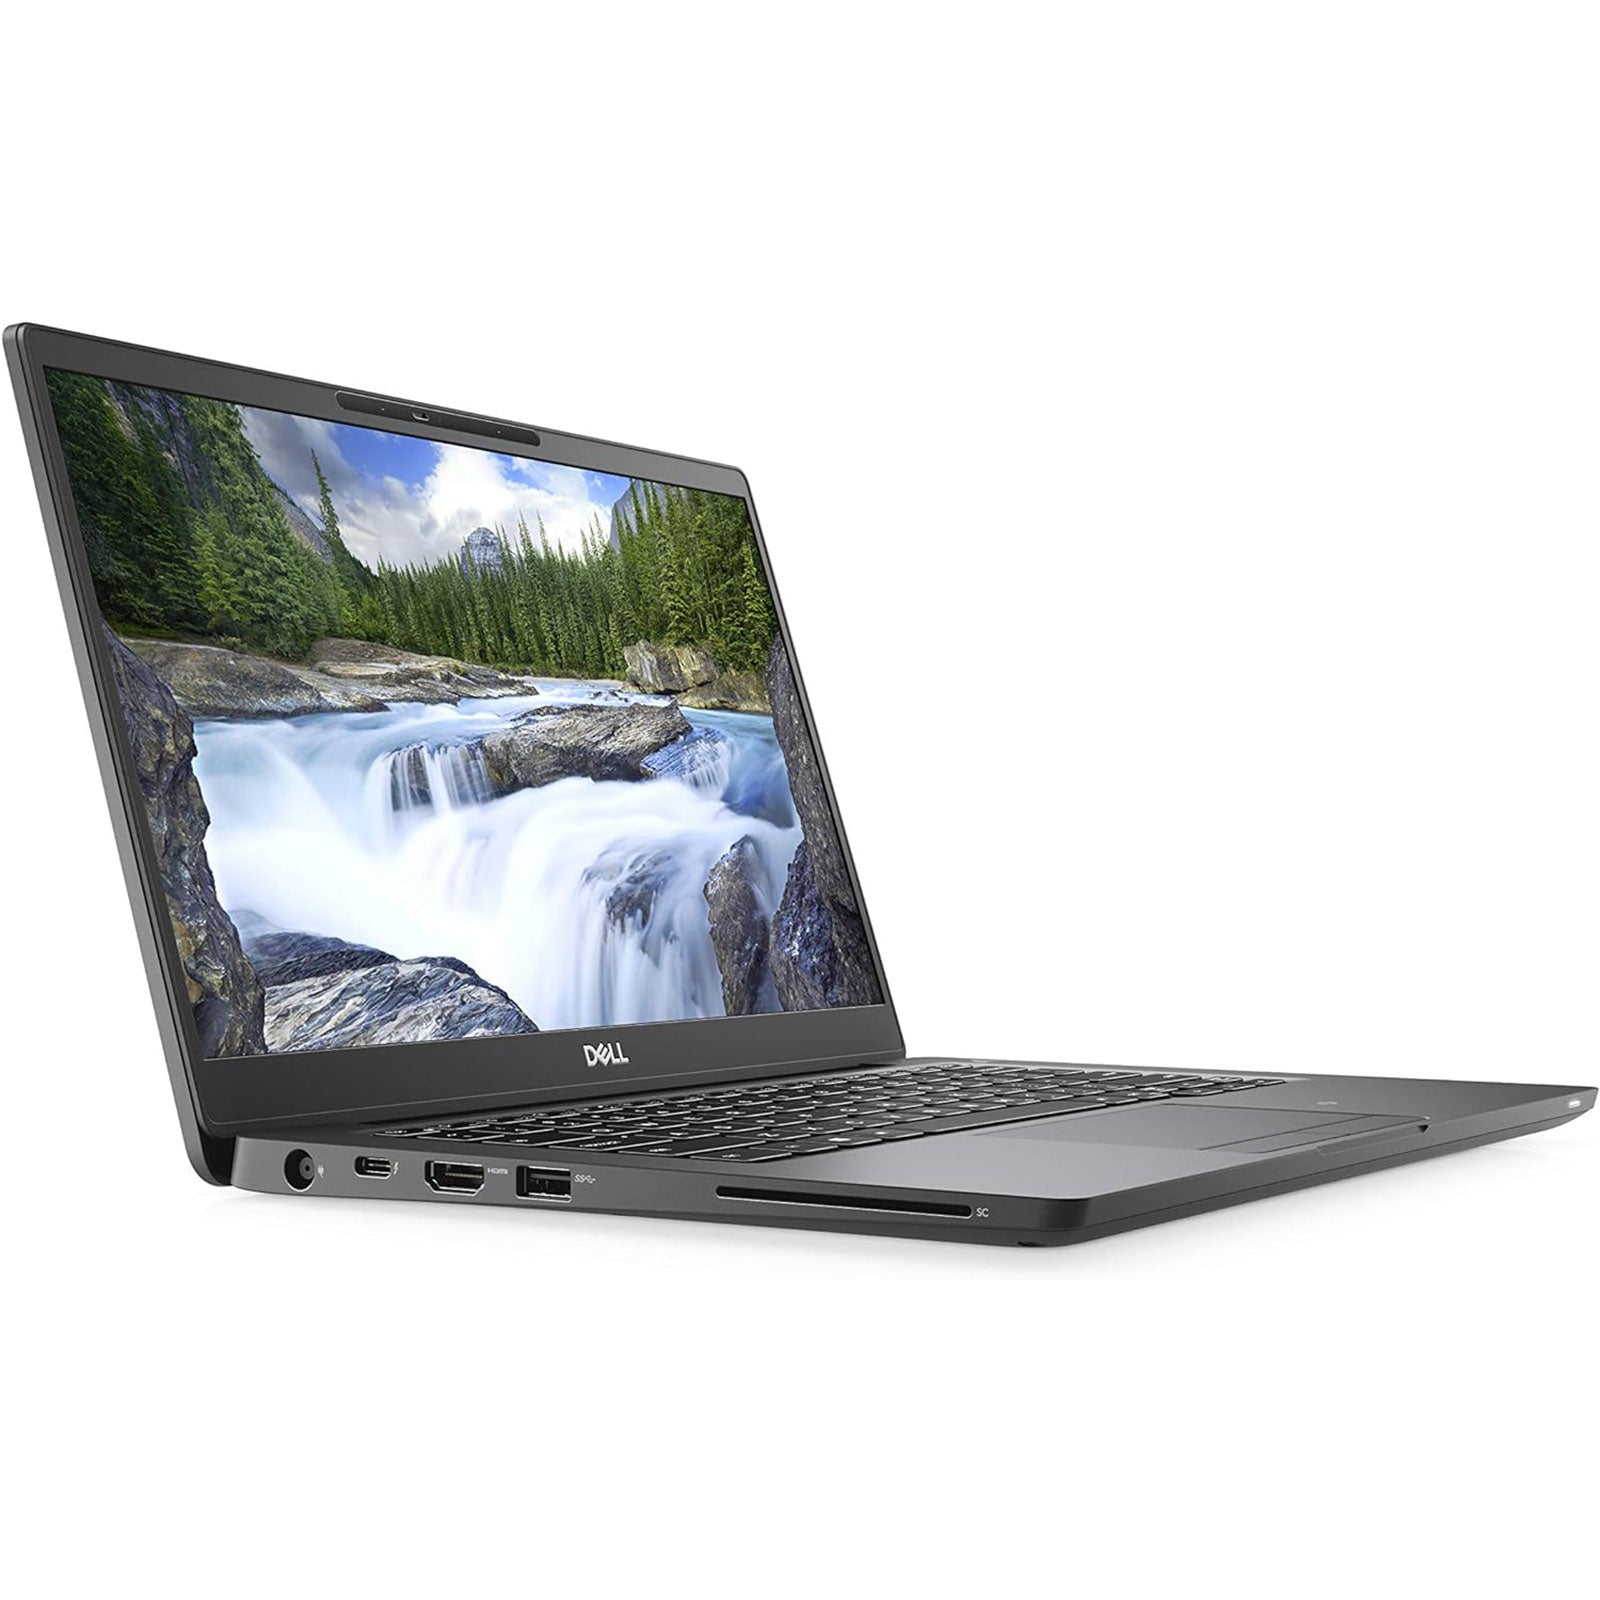 Notebook ricondizionato - Grado A - Dell Latitude 7300 PC Notebook 13.3" Intel i5-8265U Ram 16Gb SSD 512Gb Webcam Freedos (Ricondizionato Grado A) - Disponibile in 2-4 giorni lavorativi